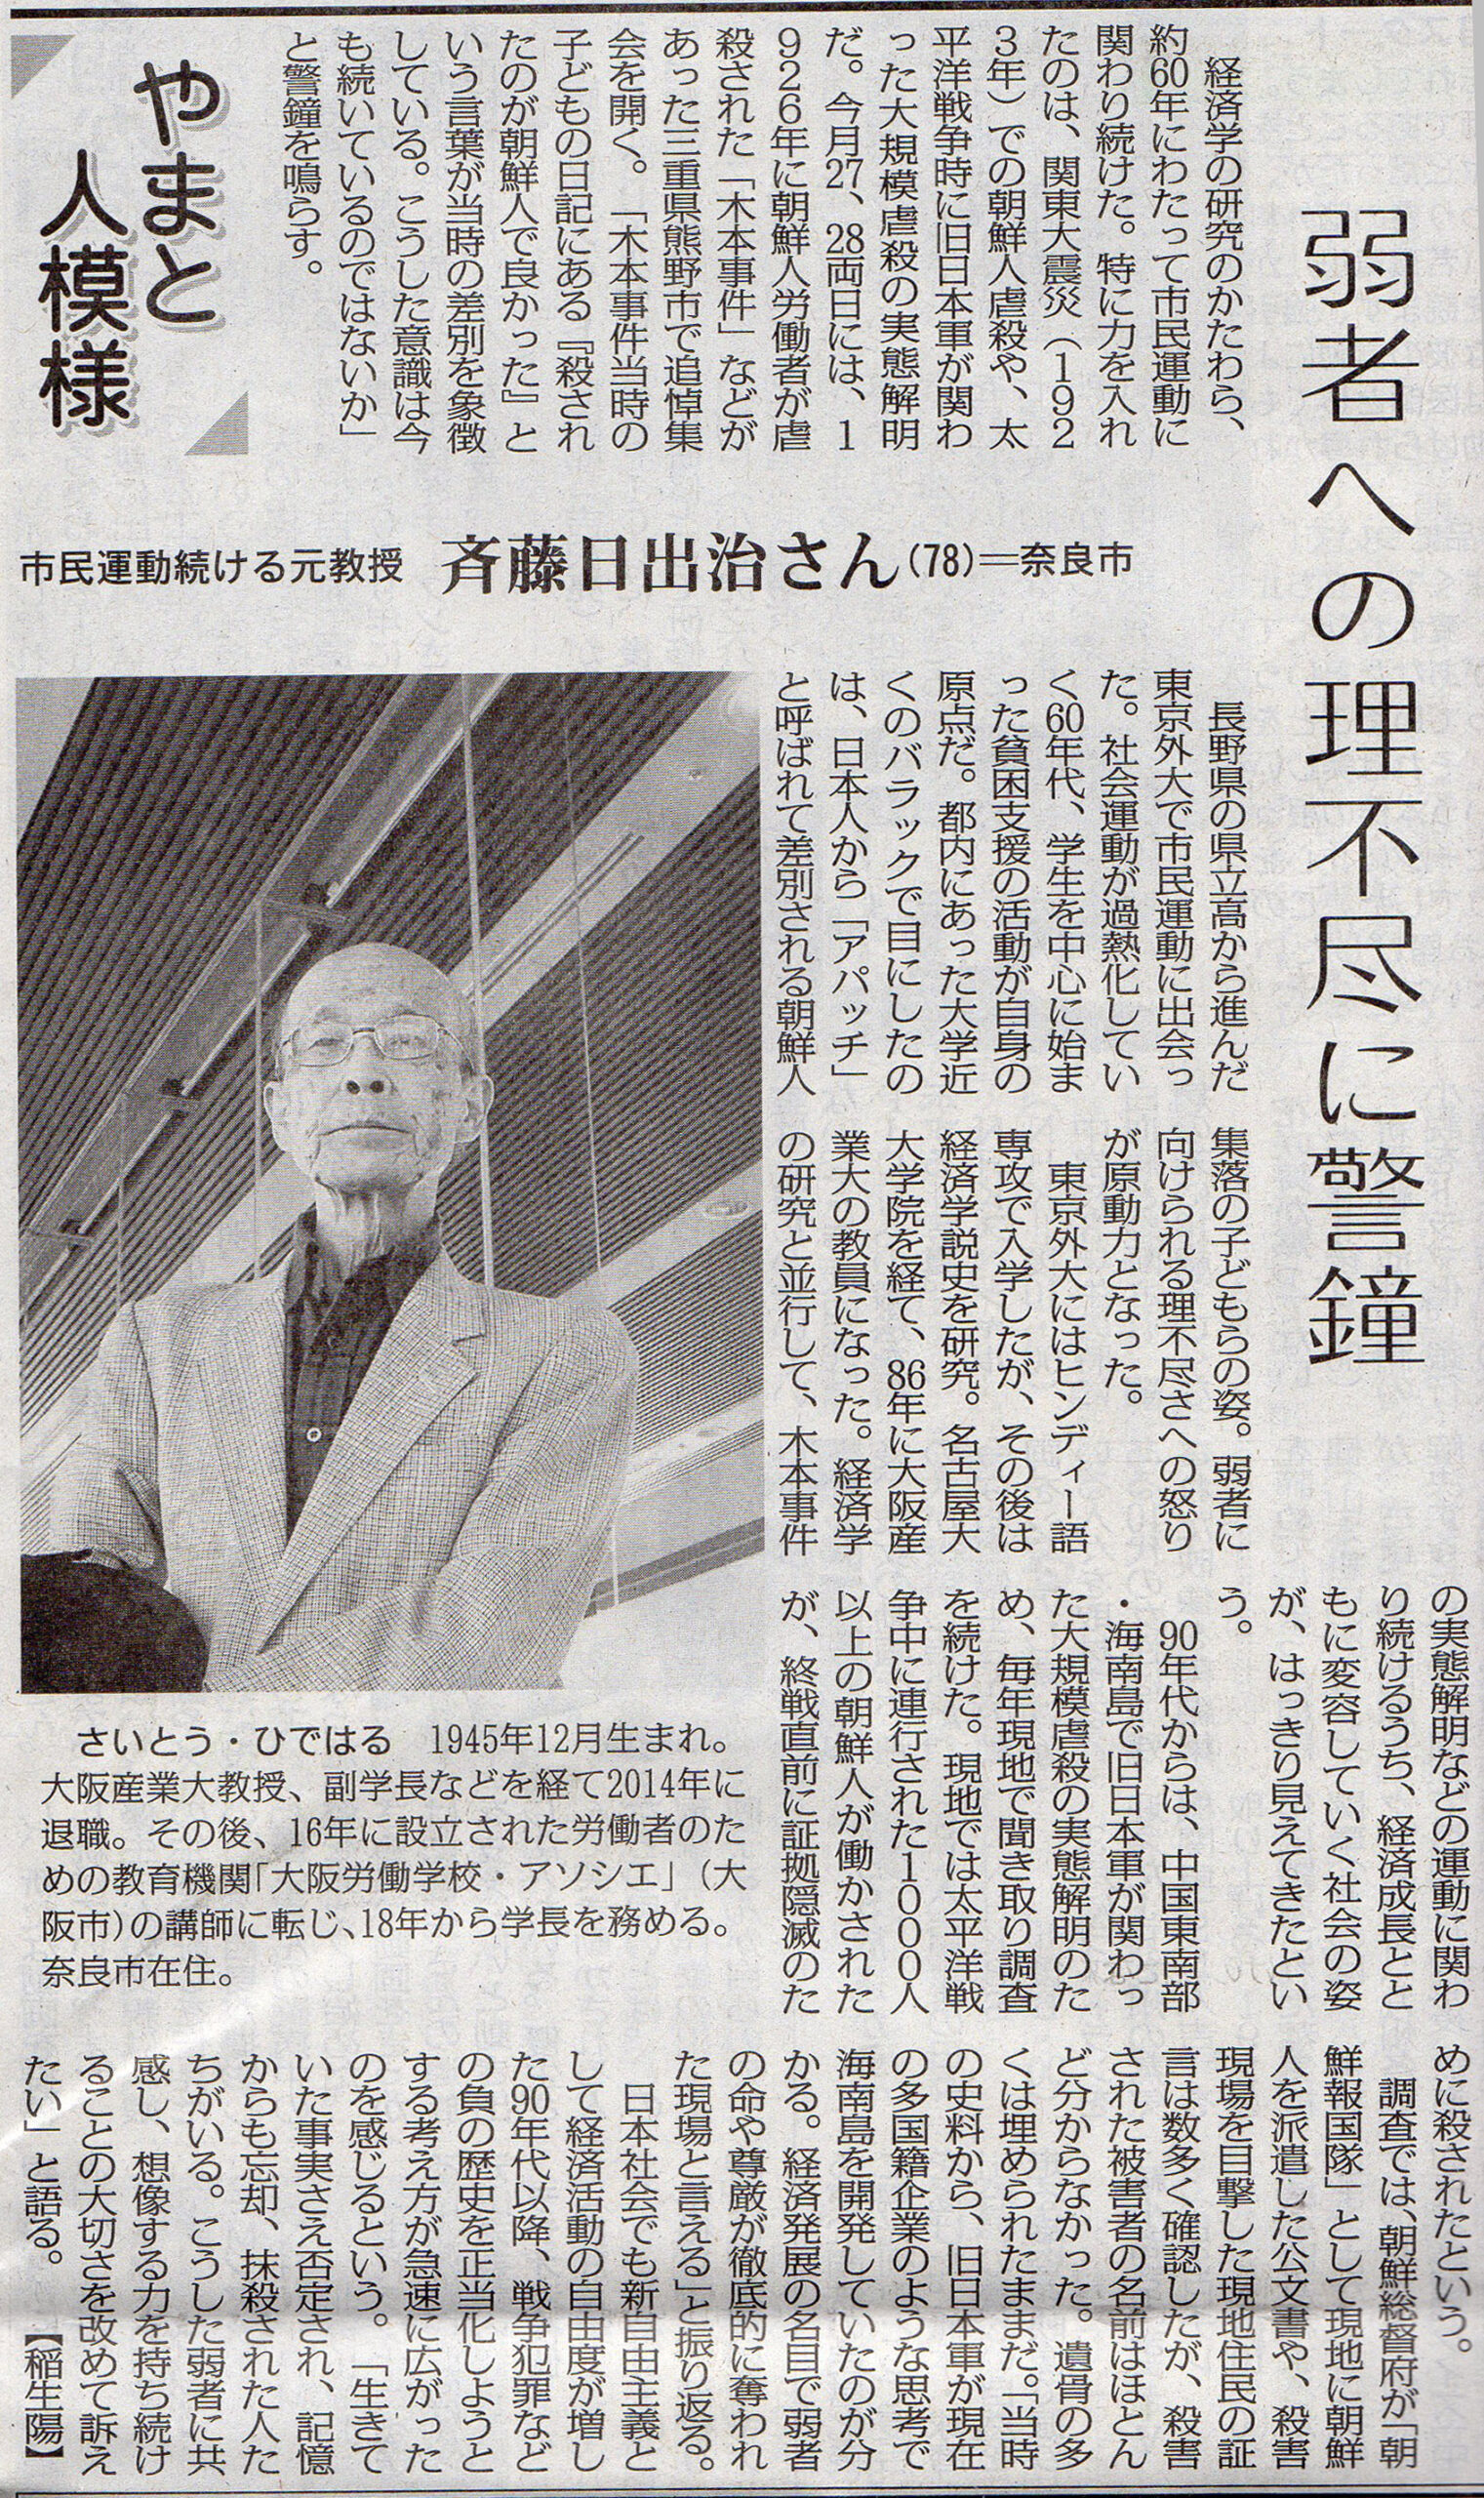 著者の斉藤日出治さんが毎日新聞で紹介されました!